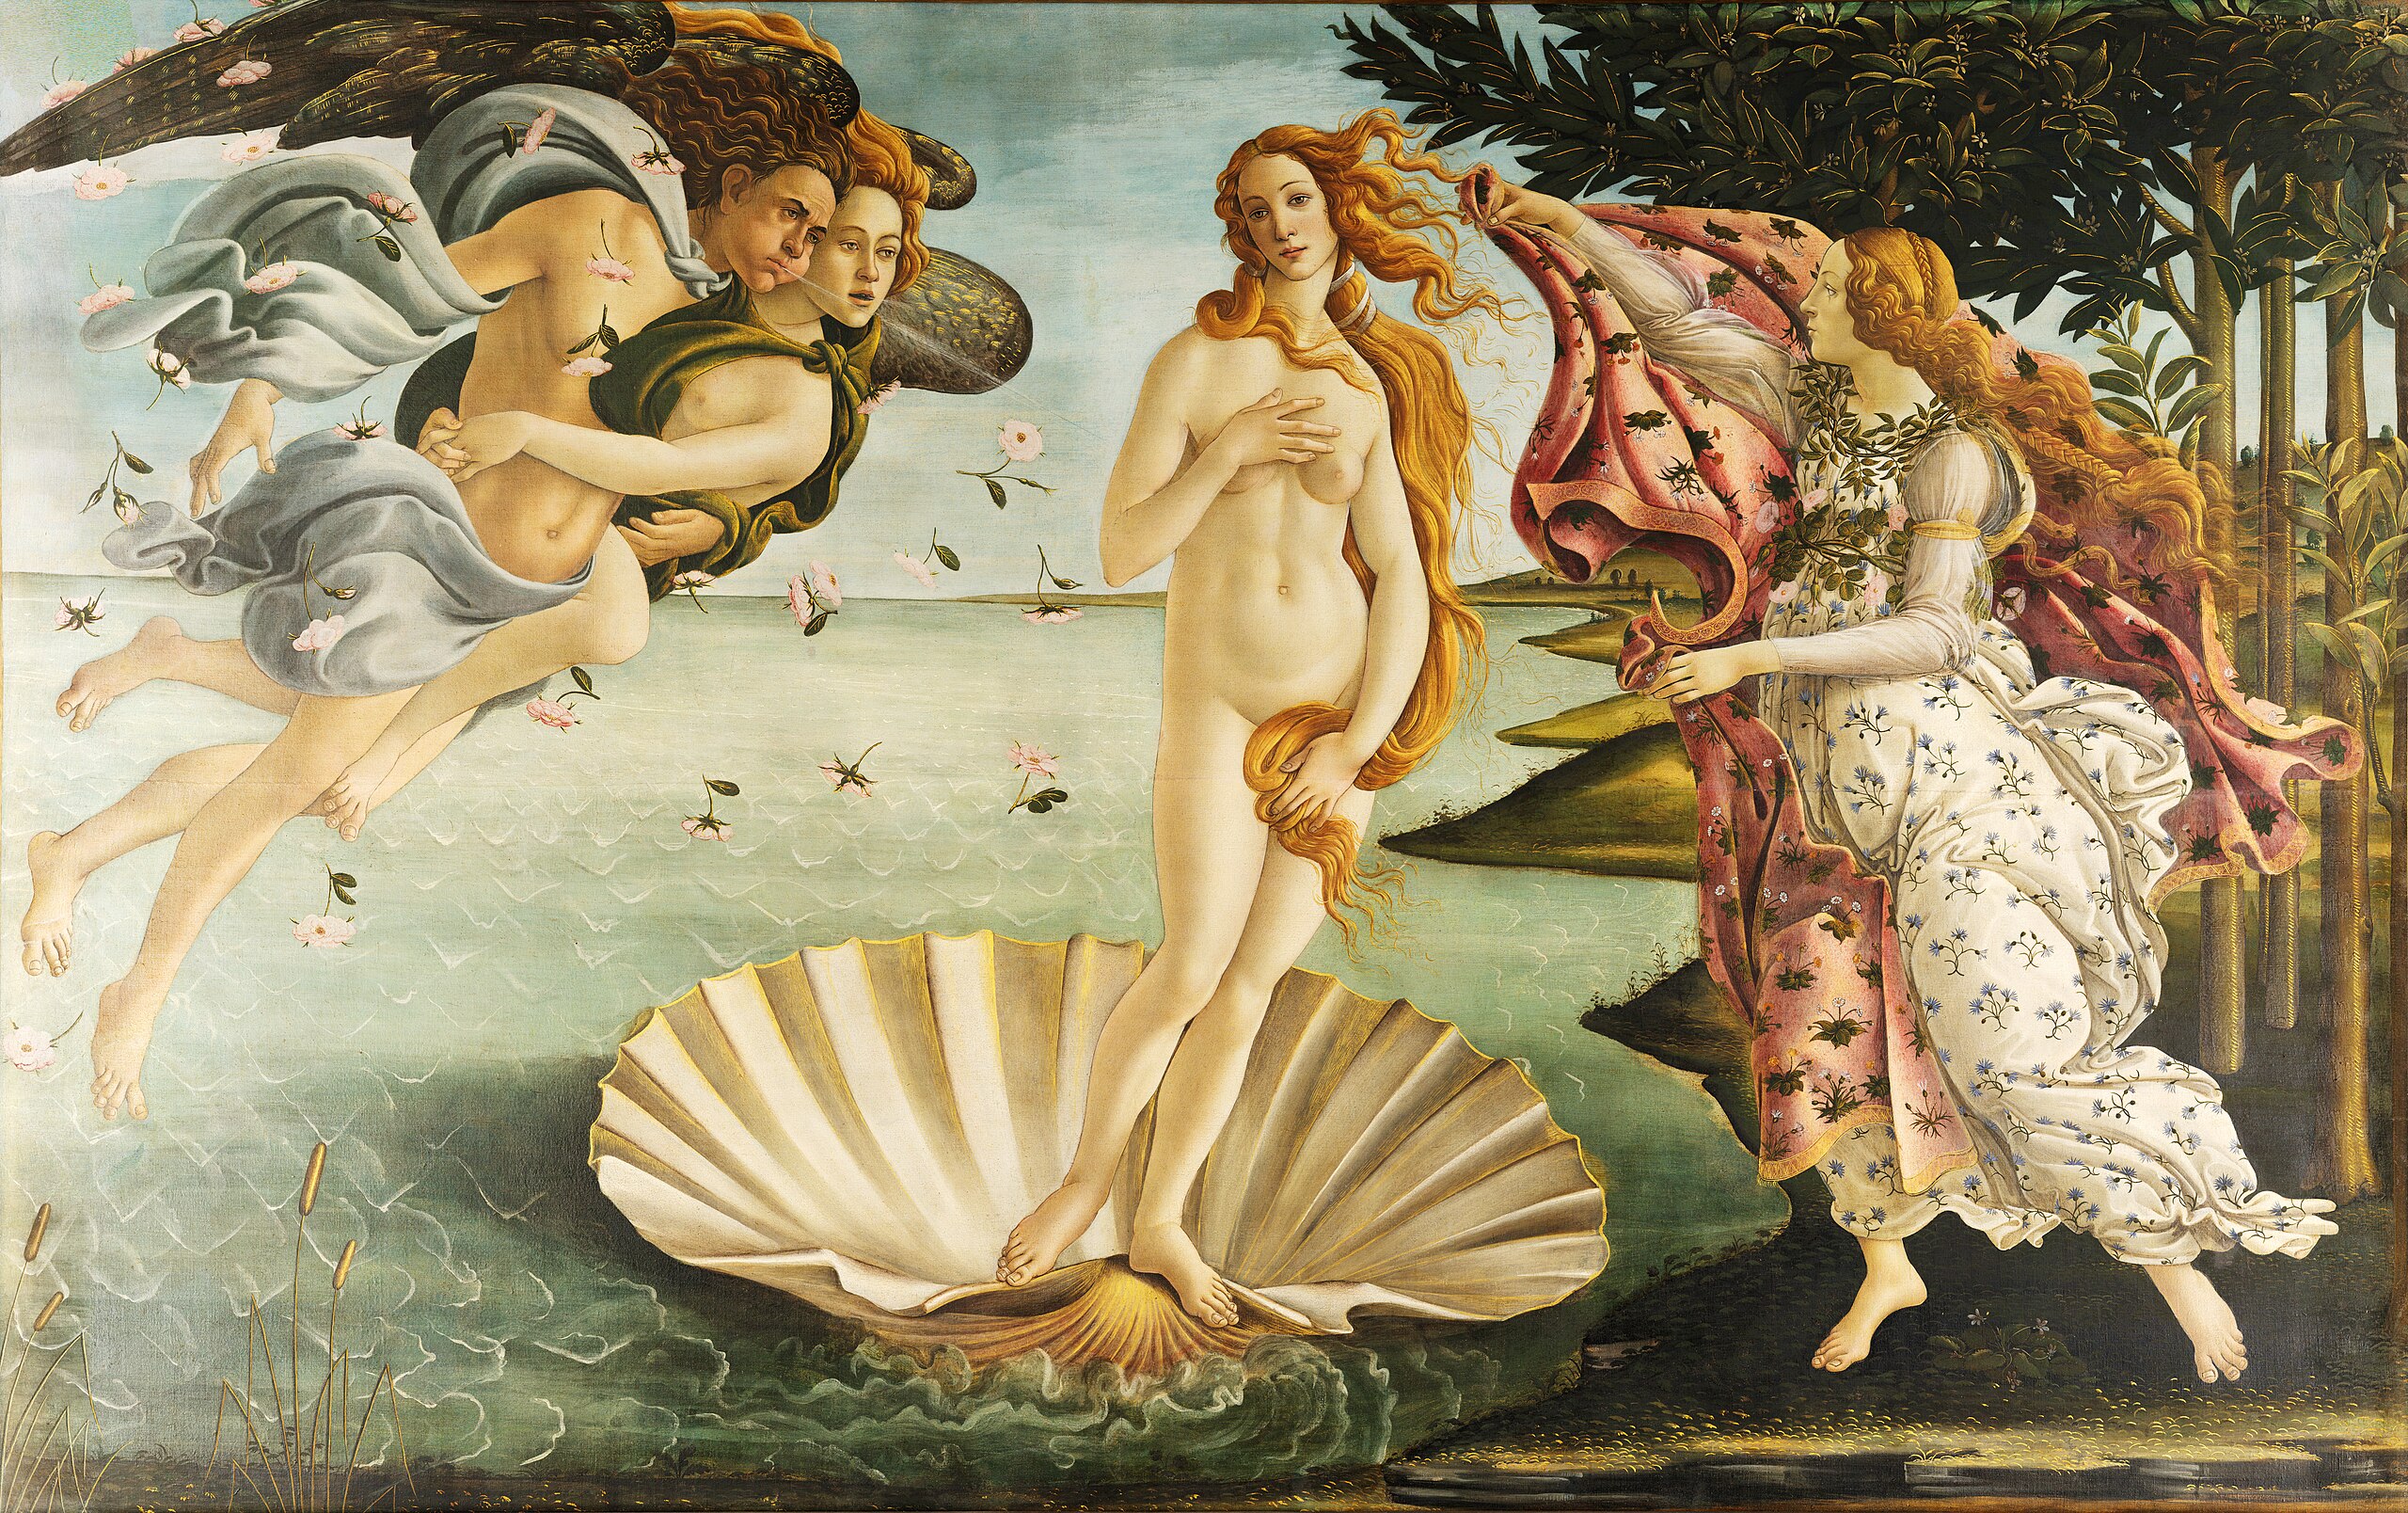 2560px-Sandro_Botticelli_-_La_nascita_di_Venere_-_Google_Art_Project_-_edited.jpg